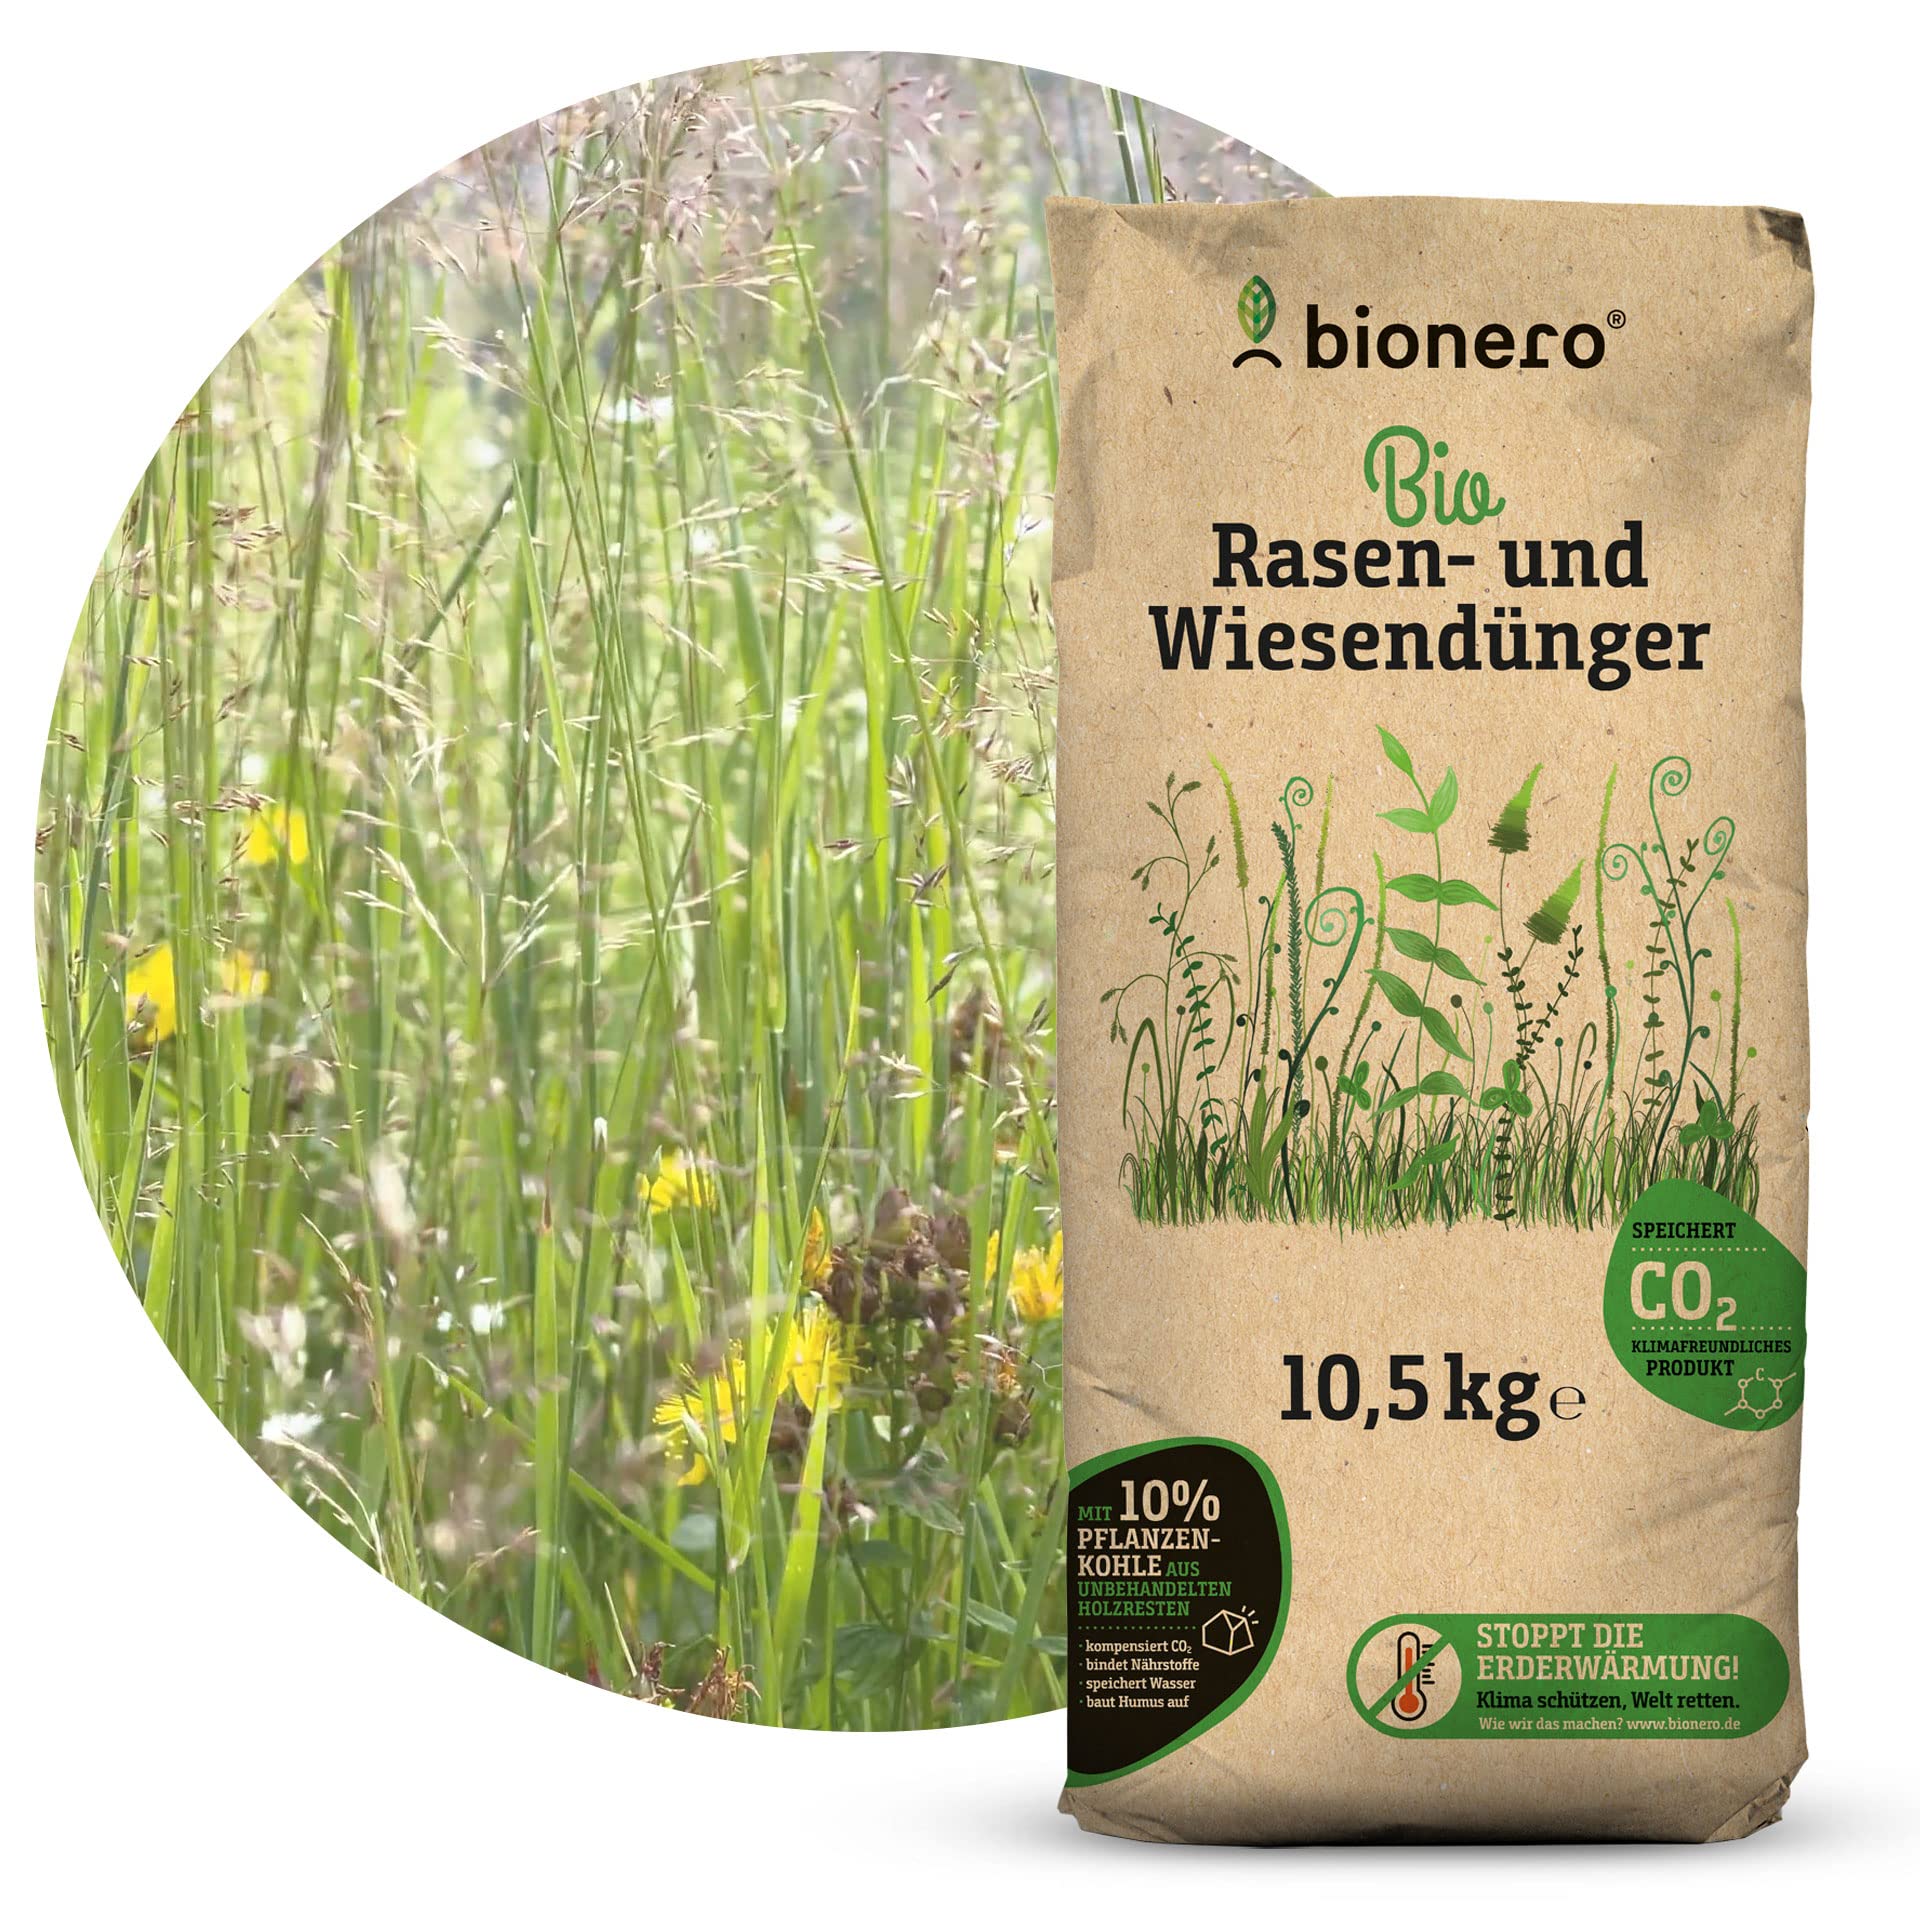 bionero® Bio-Rasen- und Wiesendünger 10,5 kg, Grasdünger, Gartendünger, Naturdünger, organisch